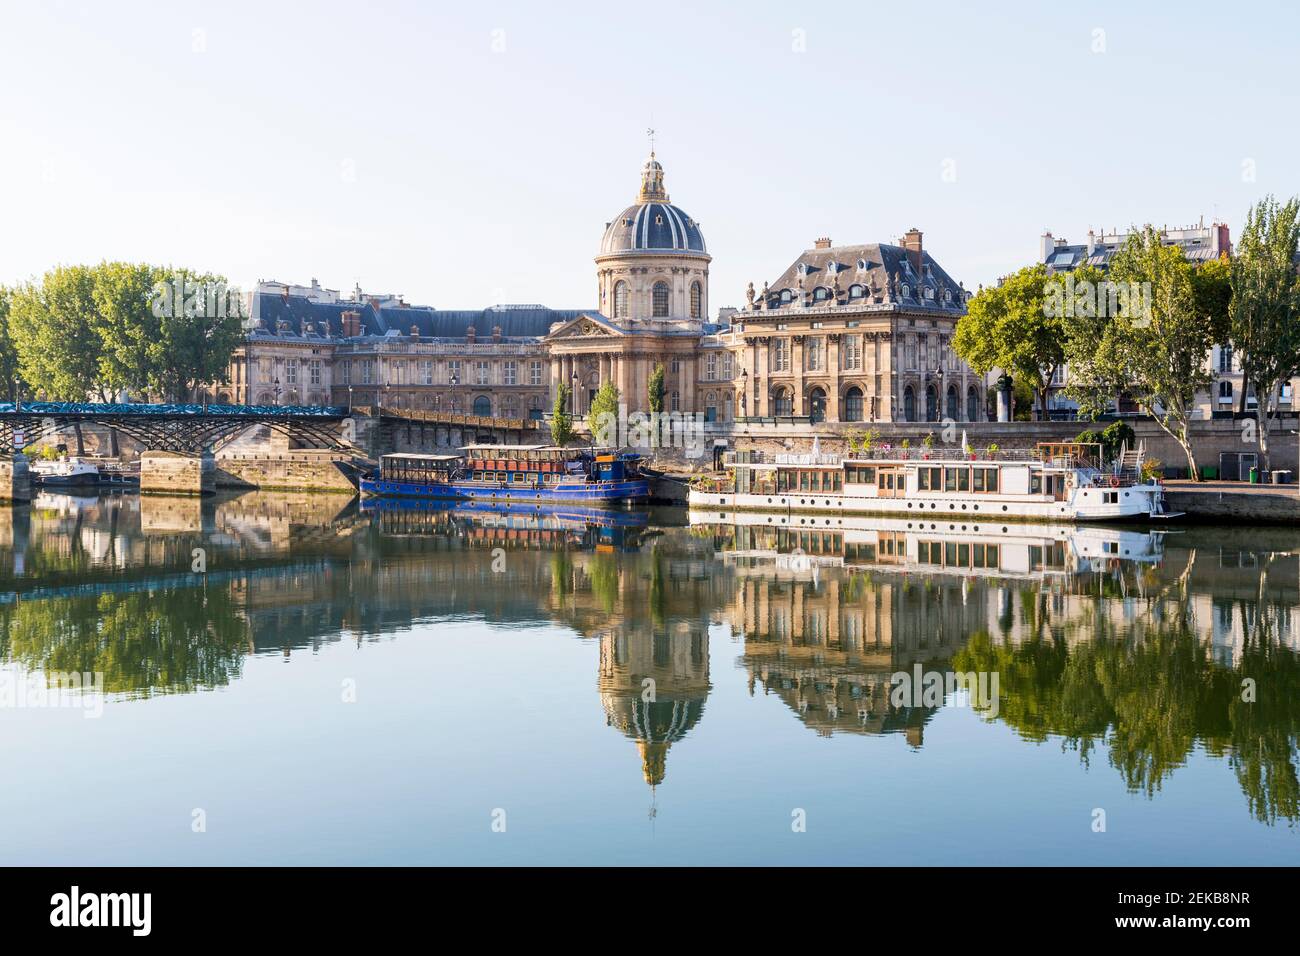 France, Ile-de-France, Paris, Institut de France se reflétant sur la Seine Banque D'Images